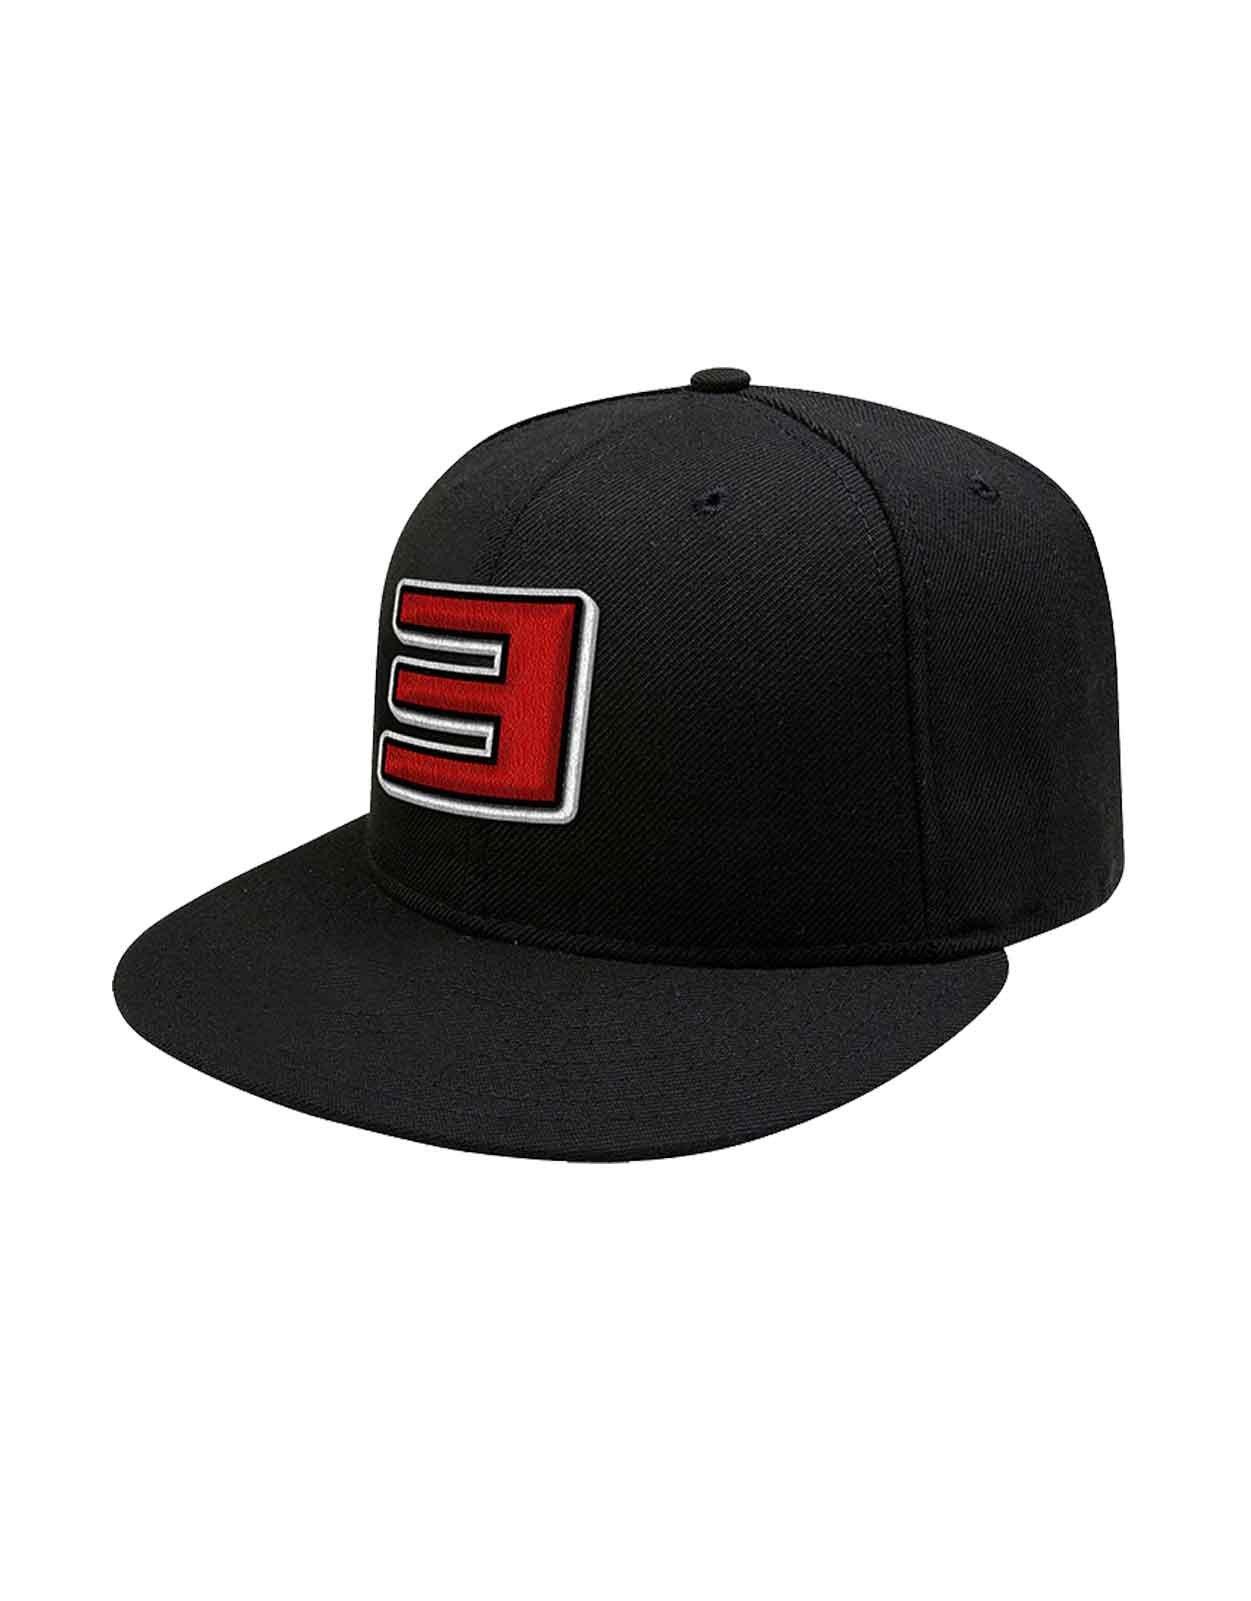 Бейсболка Snapback с тонким логотипом Shady Eminem, черный бейсболка snapback с тонким логотипом shady eminem черный